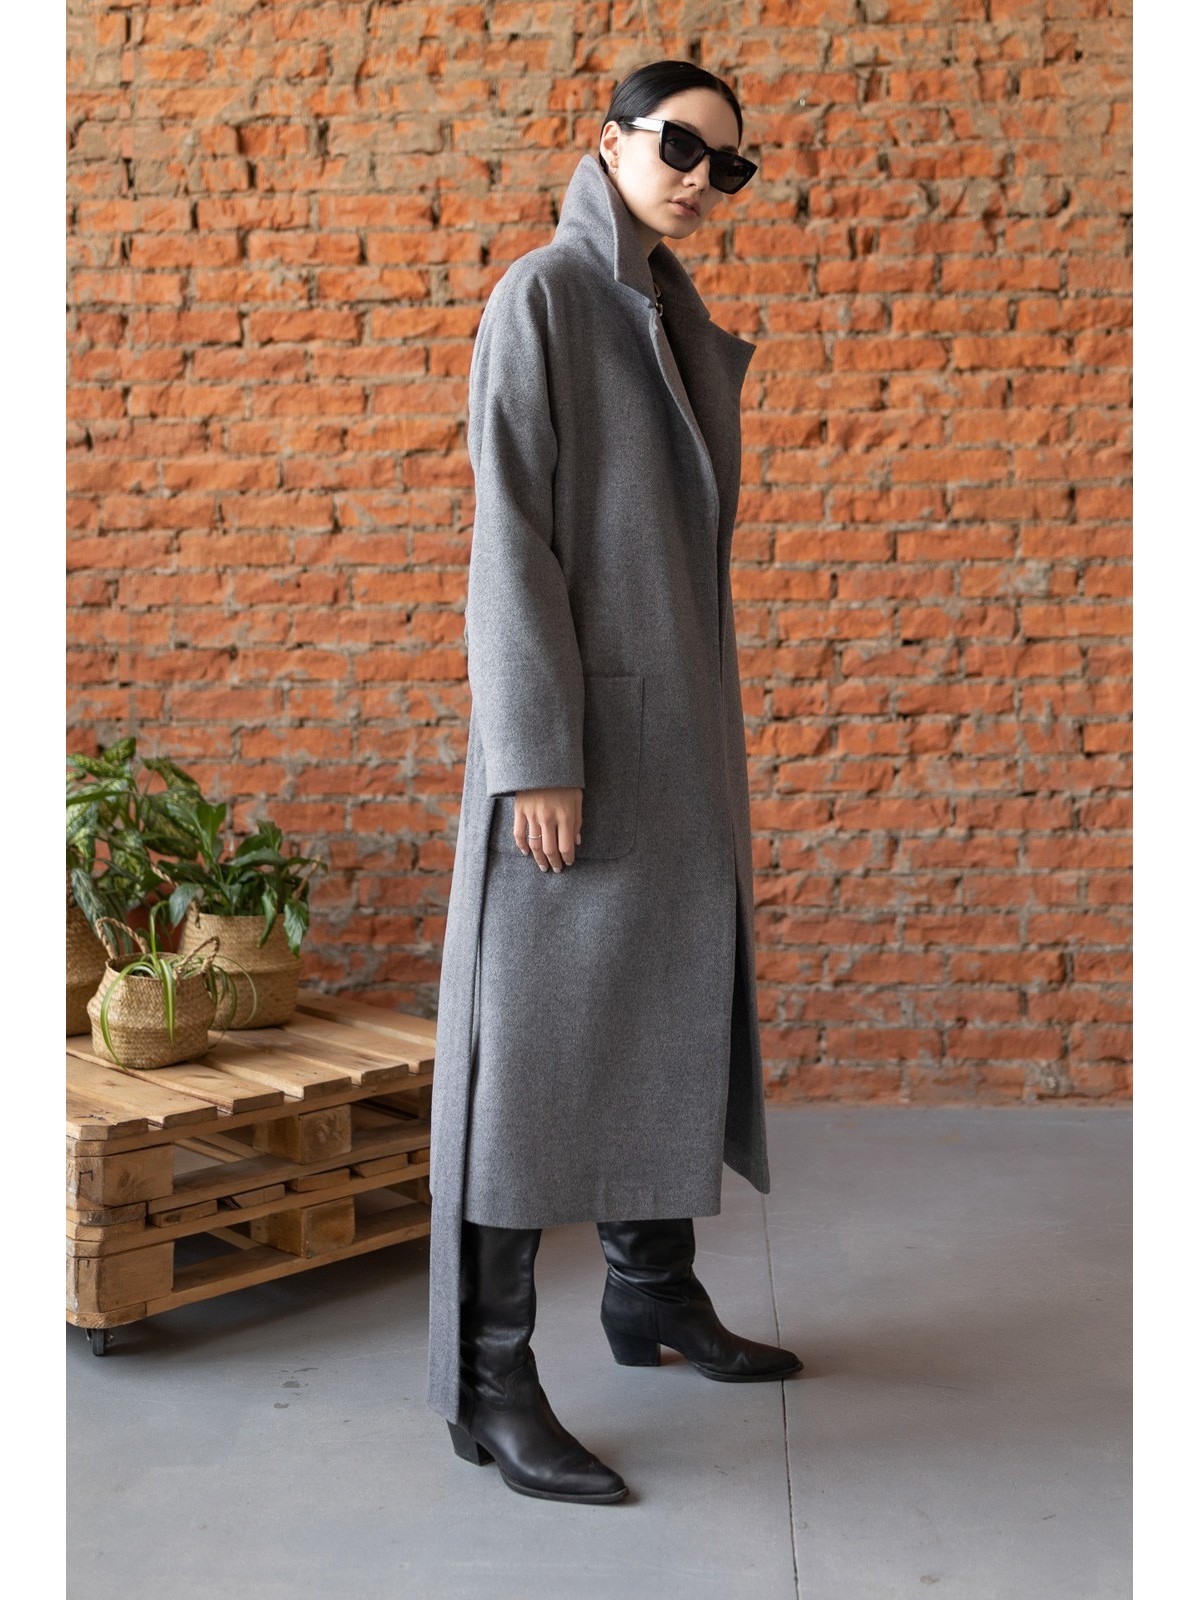 Пальто-халат Grey (Серый)